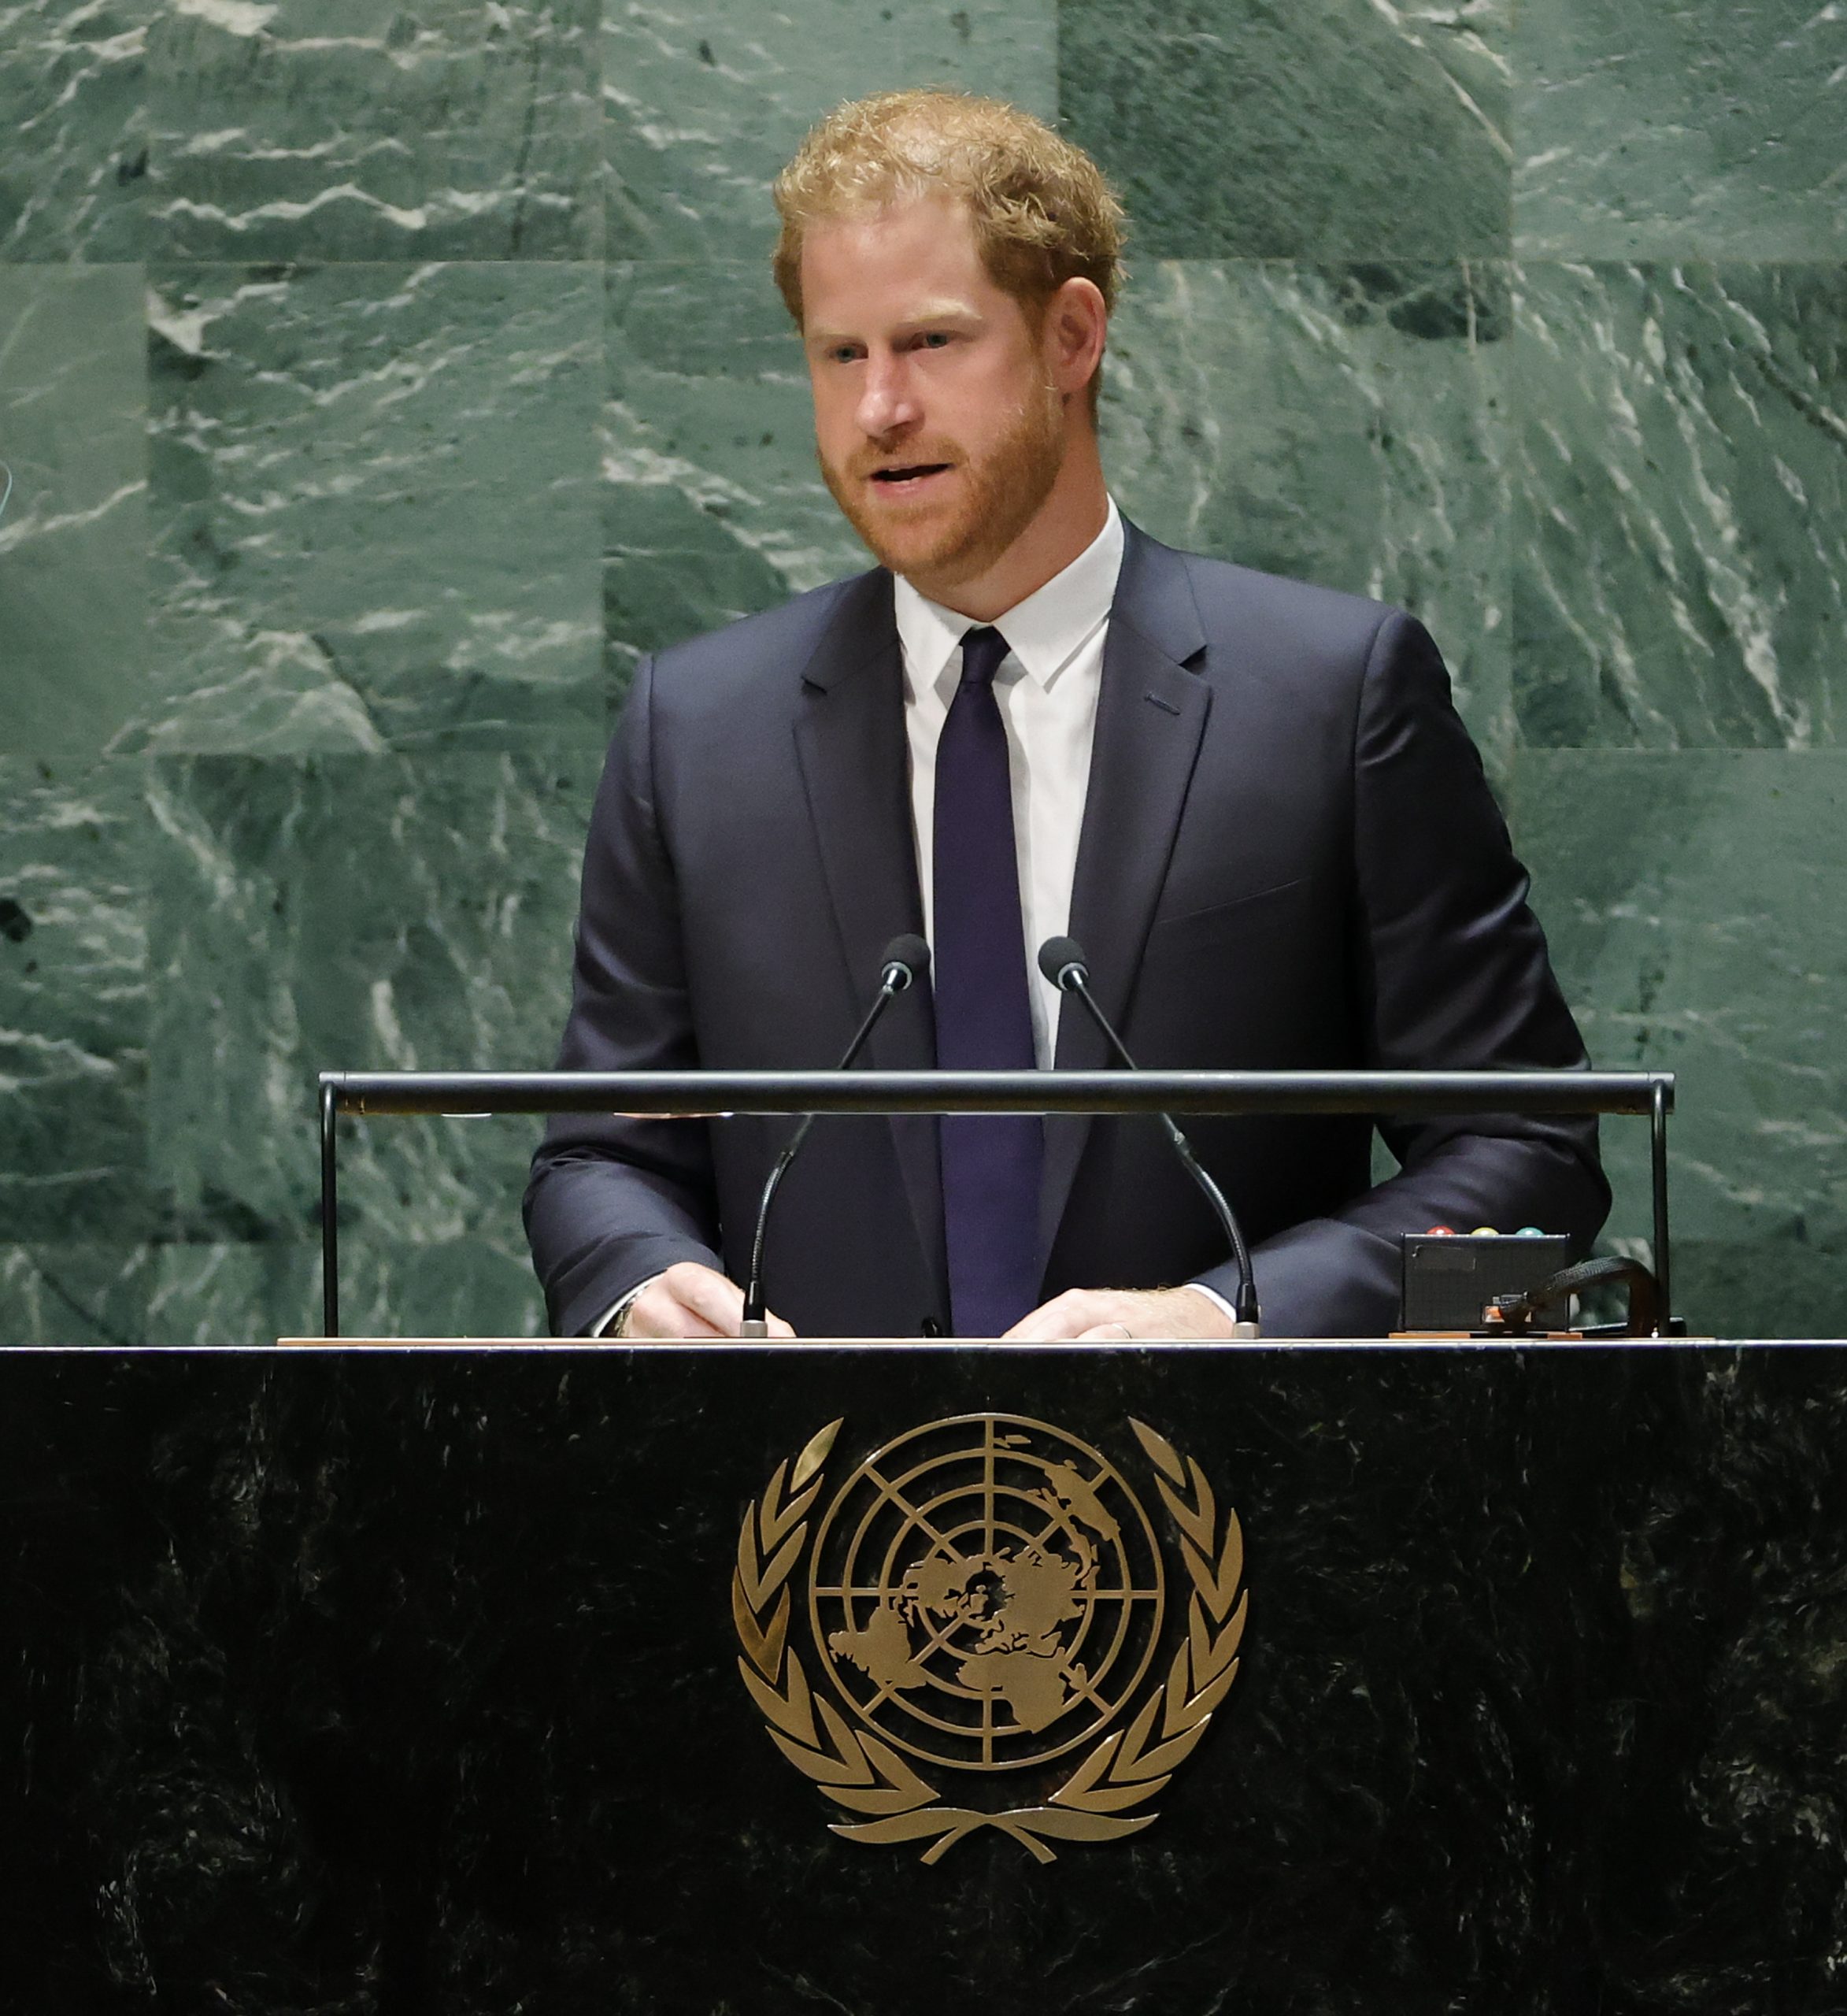 哈里王子联合国大会致词 称全球民主自由遭攻击